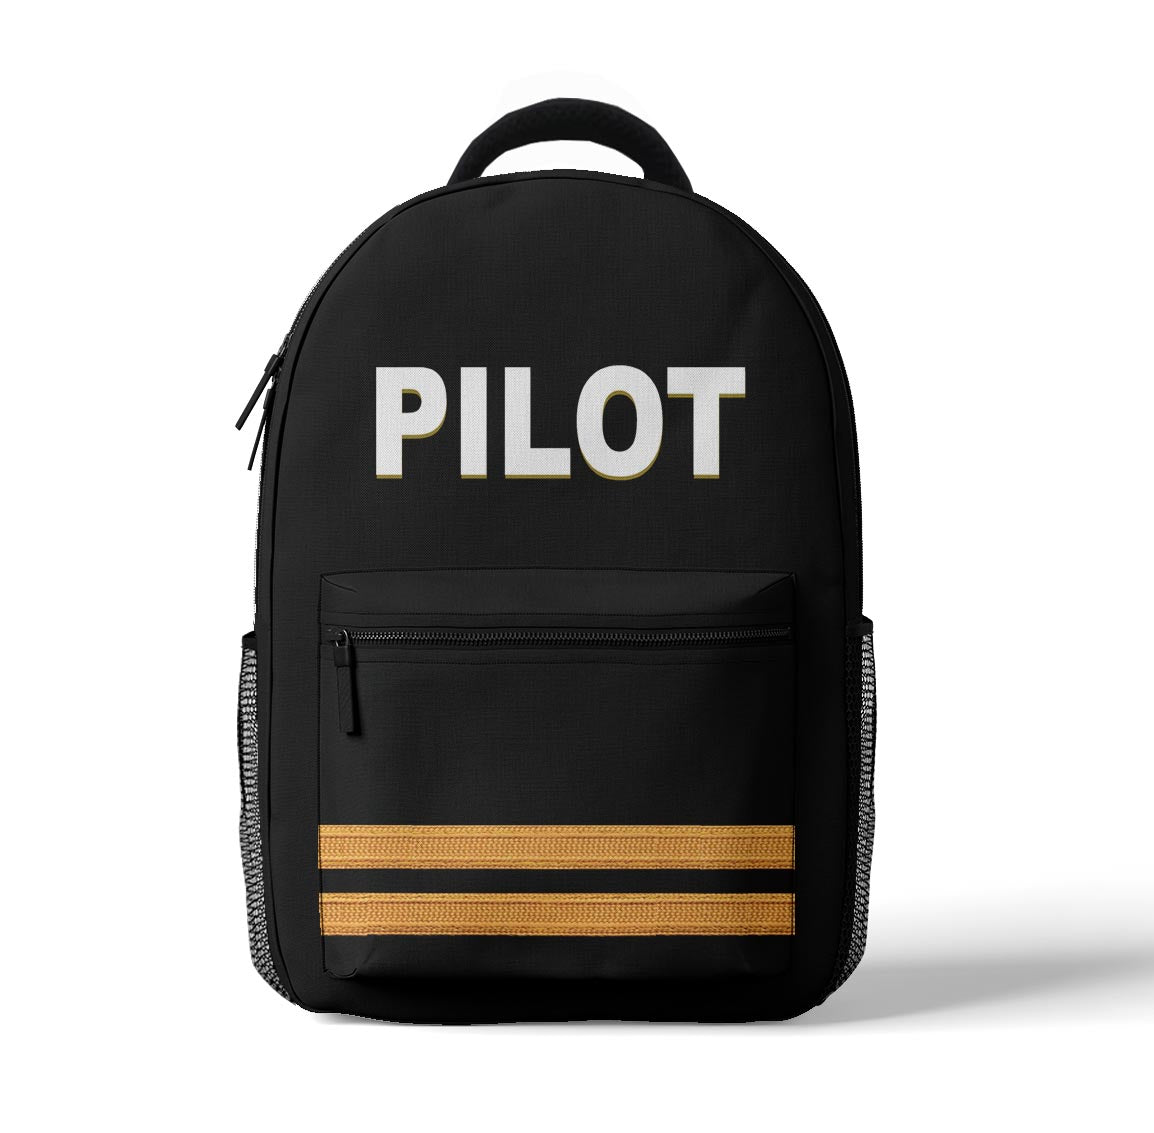 PILOT & Epaulettes (2,3,4 Lines) Designed 3D Backpacks